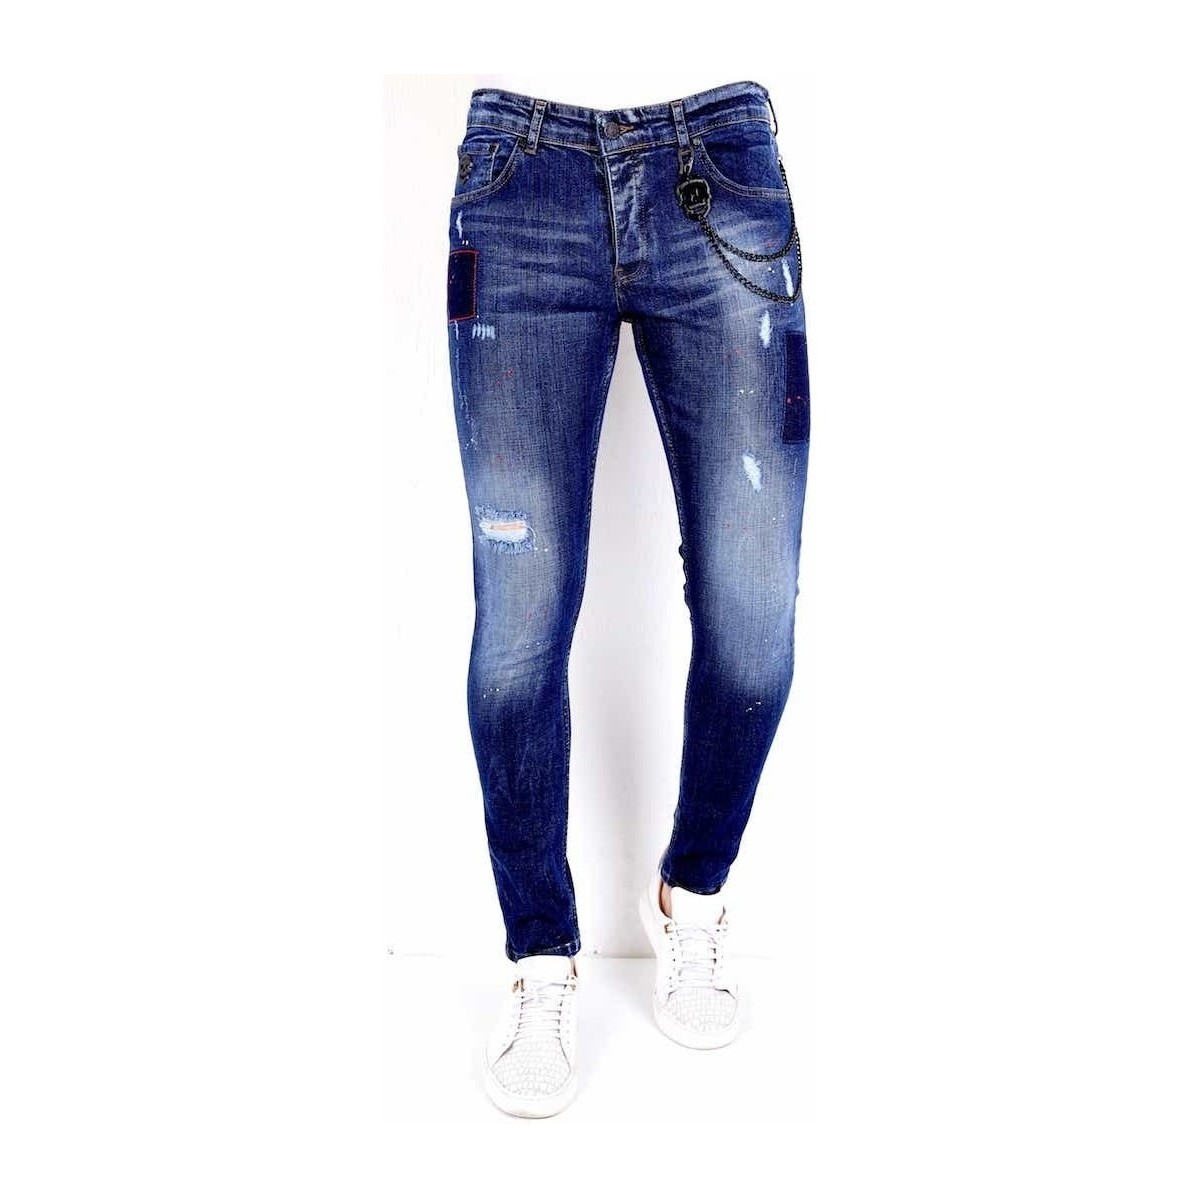 Kleidung Herren Slim Fit Jeans Local Fanatic Jeans Mit Farbspritzern Blau